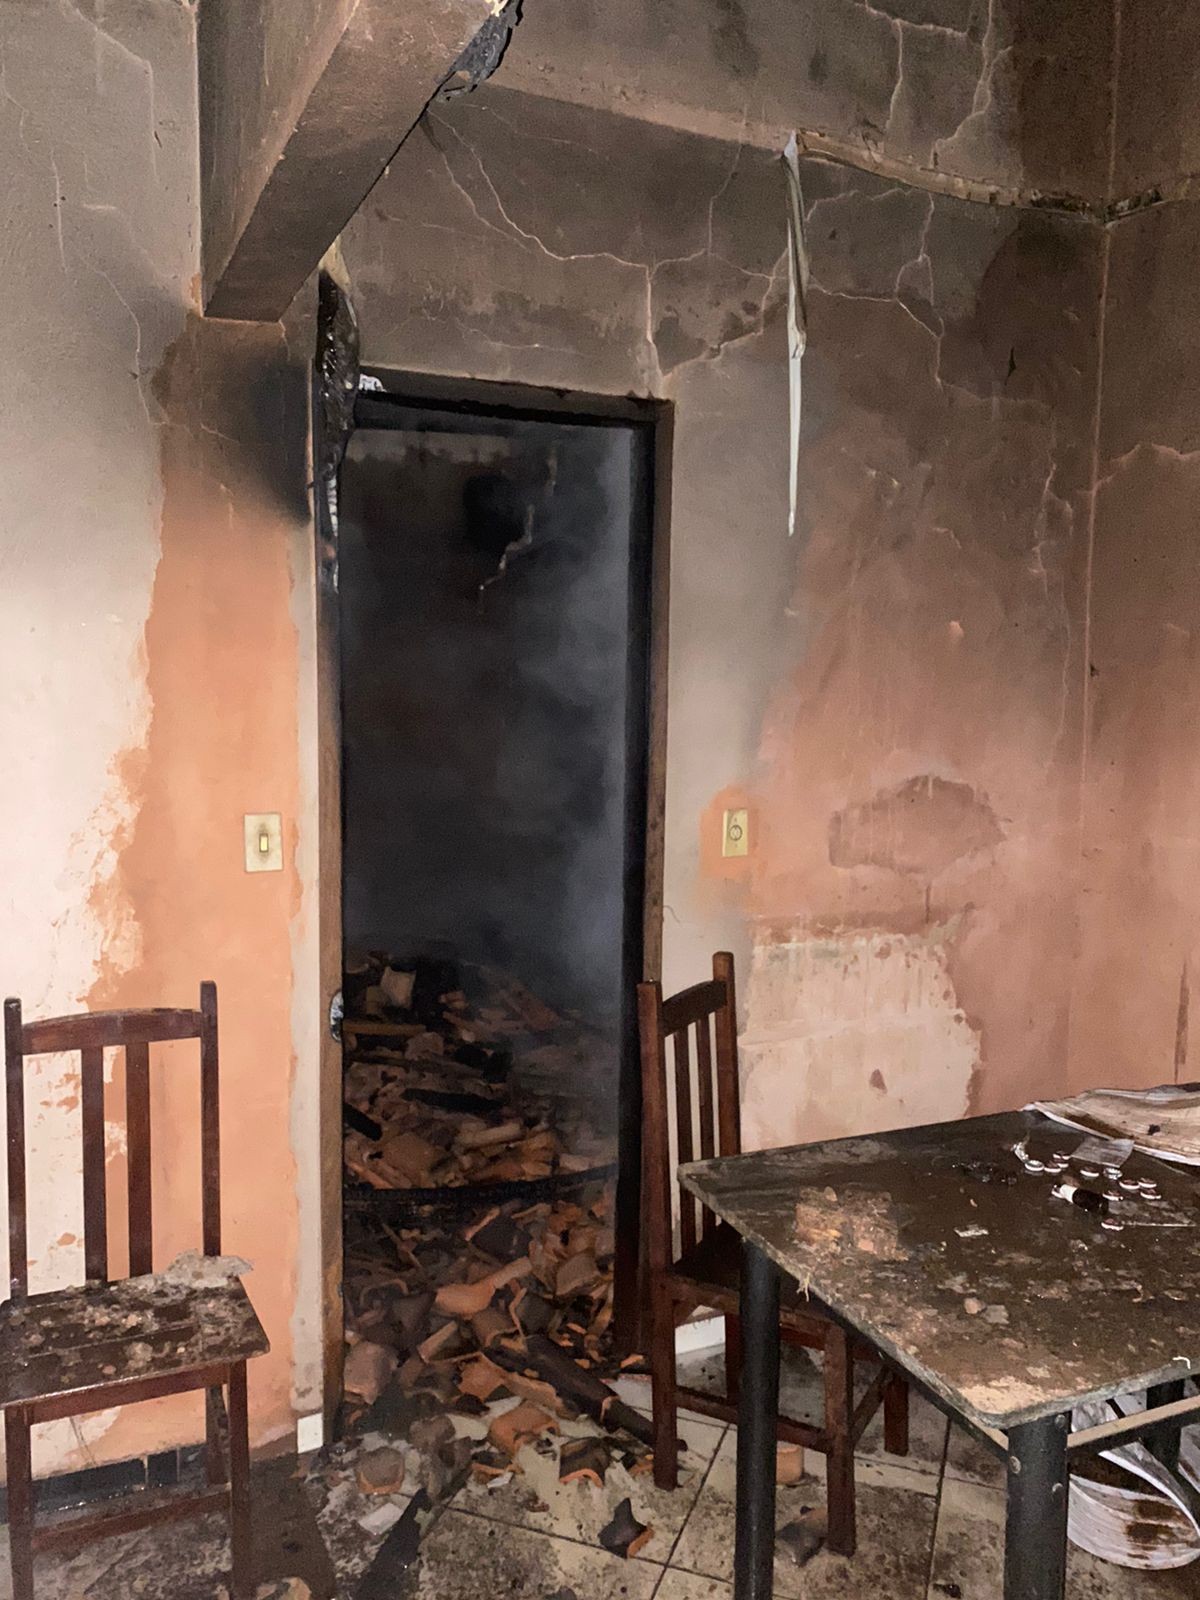 Ar-condicionado ligado provoca incêndio em Montes Claros